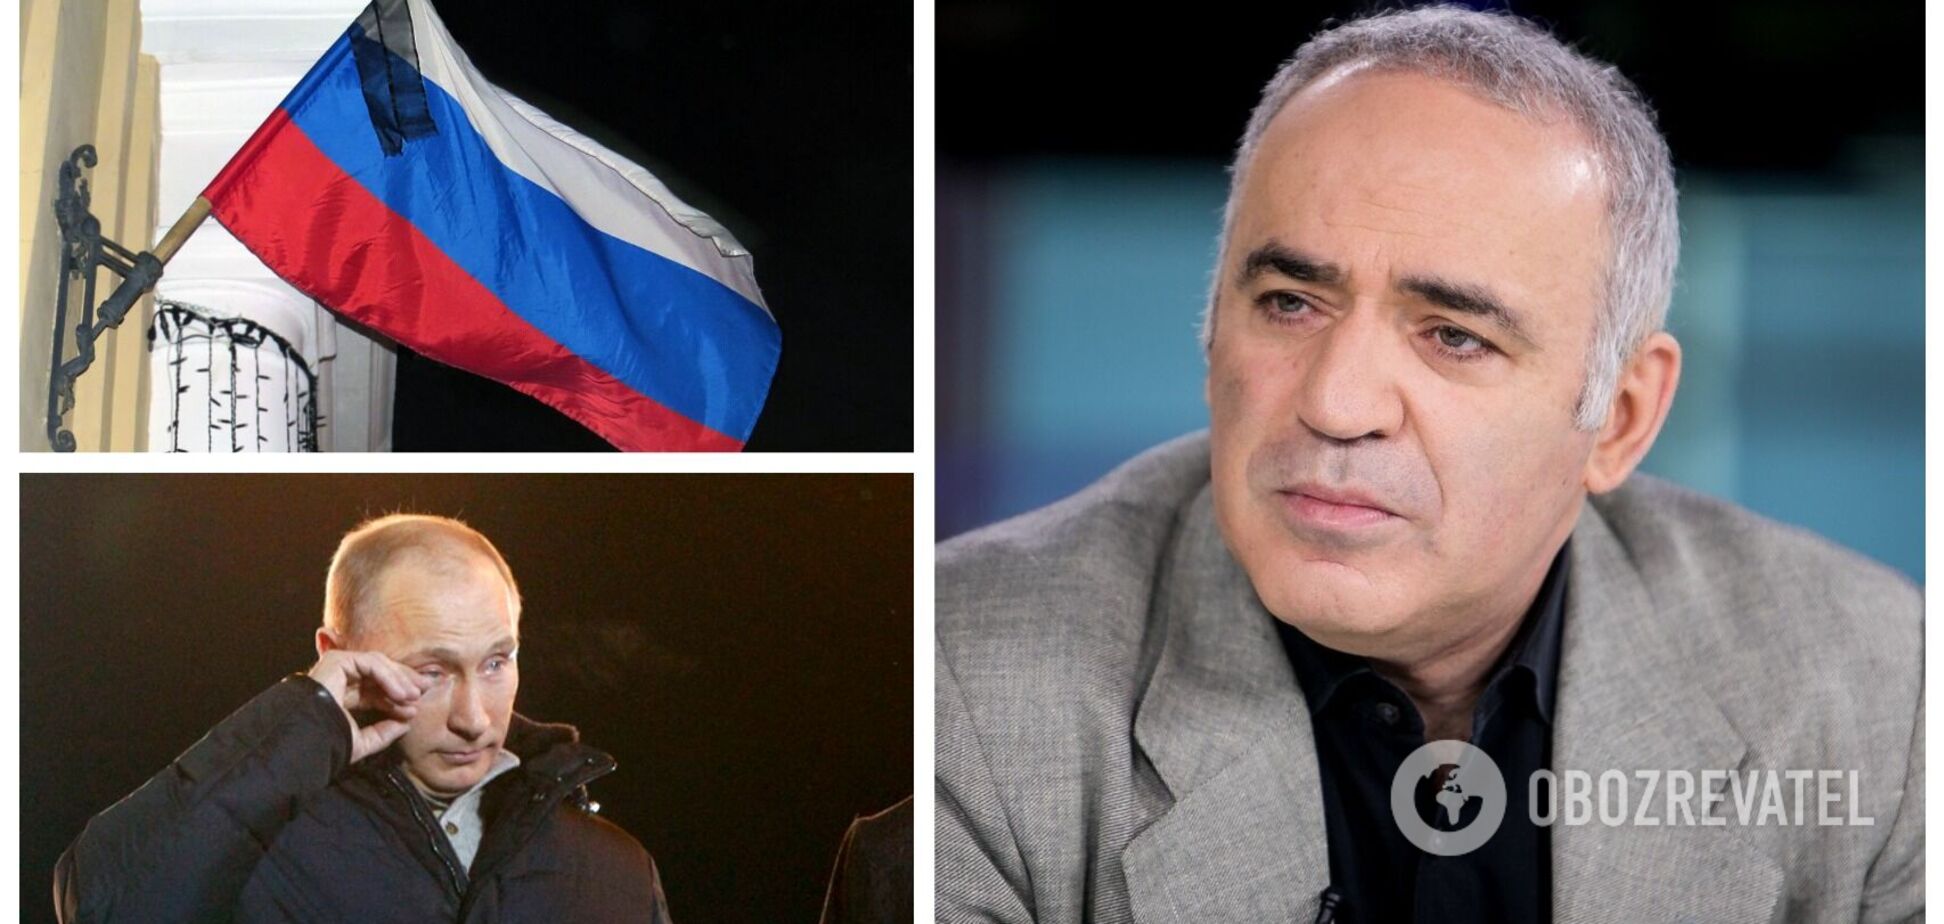 Каспаров: Путина может убить его окружение, Украина похоронит президента РФ политически и физически